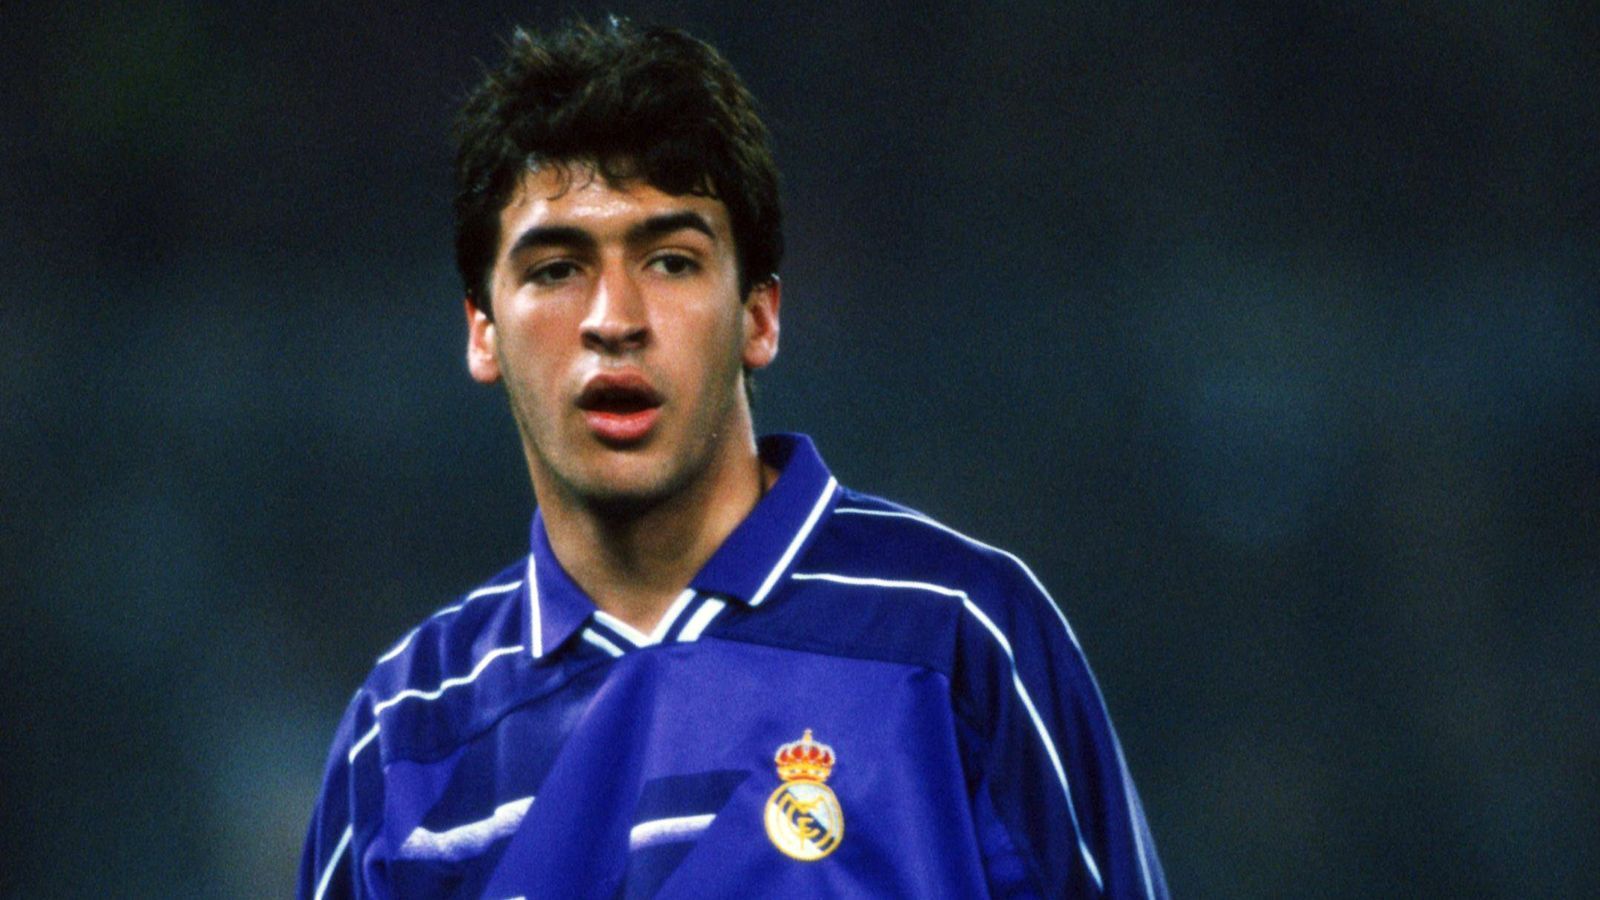 
                <strong>Platz 2 - Raul (Real Madrid)</strong><br>
                Alter bei seinem Dreierpack: 18,3 JahreSpiel gegen: Ferencvaros Budapest (18. Oktober 1995)
              